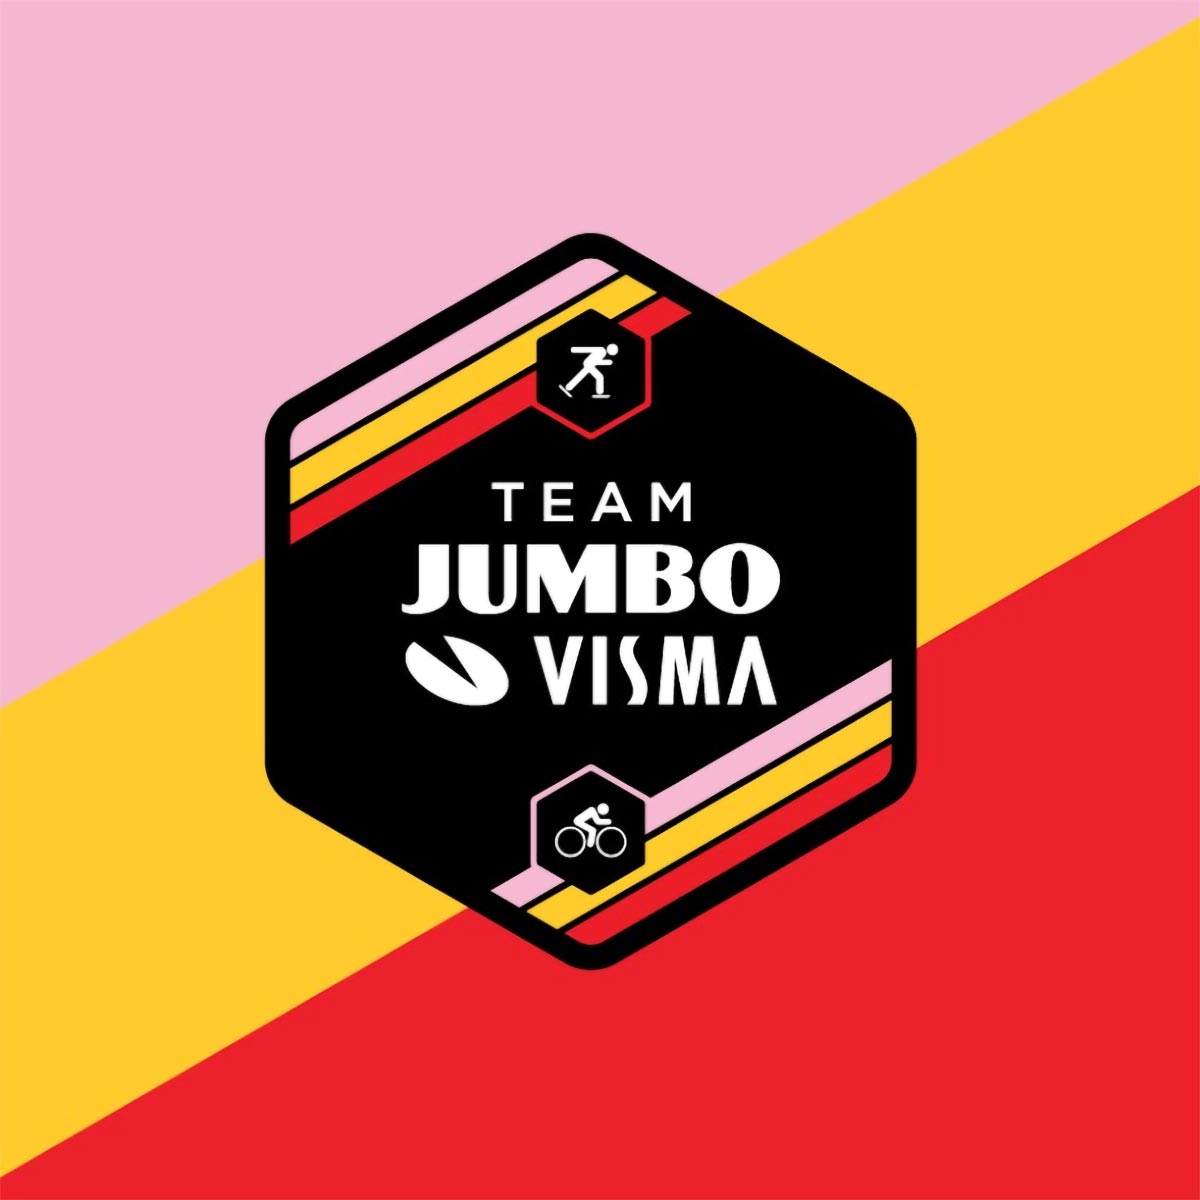 El Jumbo-Visma cambia de nombre: se llamará Visma - Lease a Bike a partir de 2024